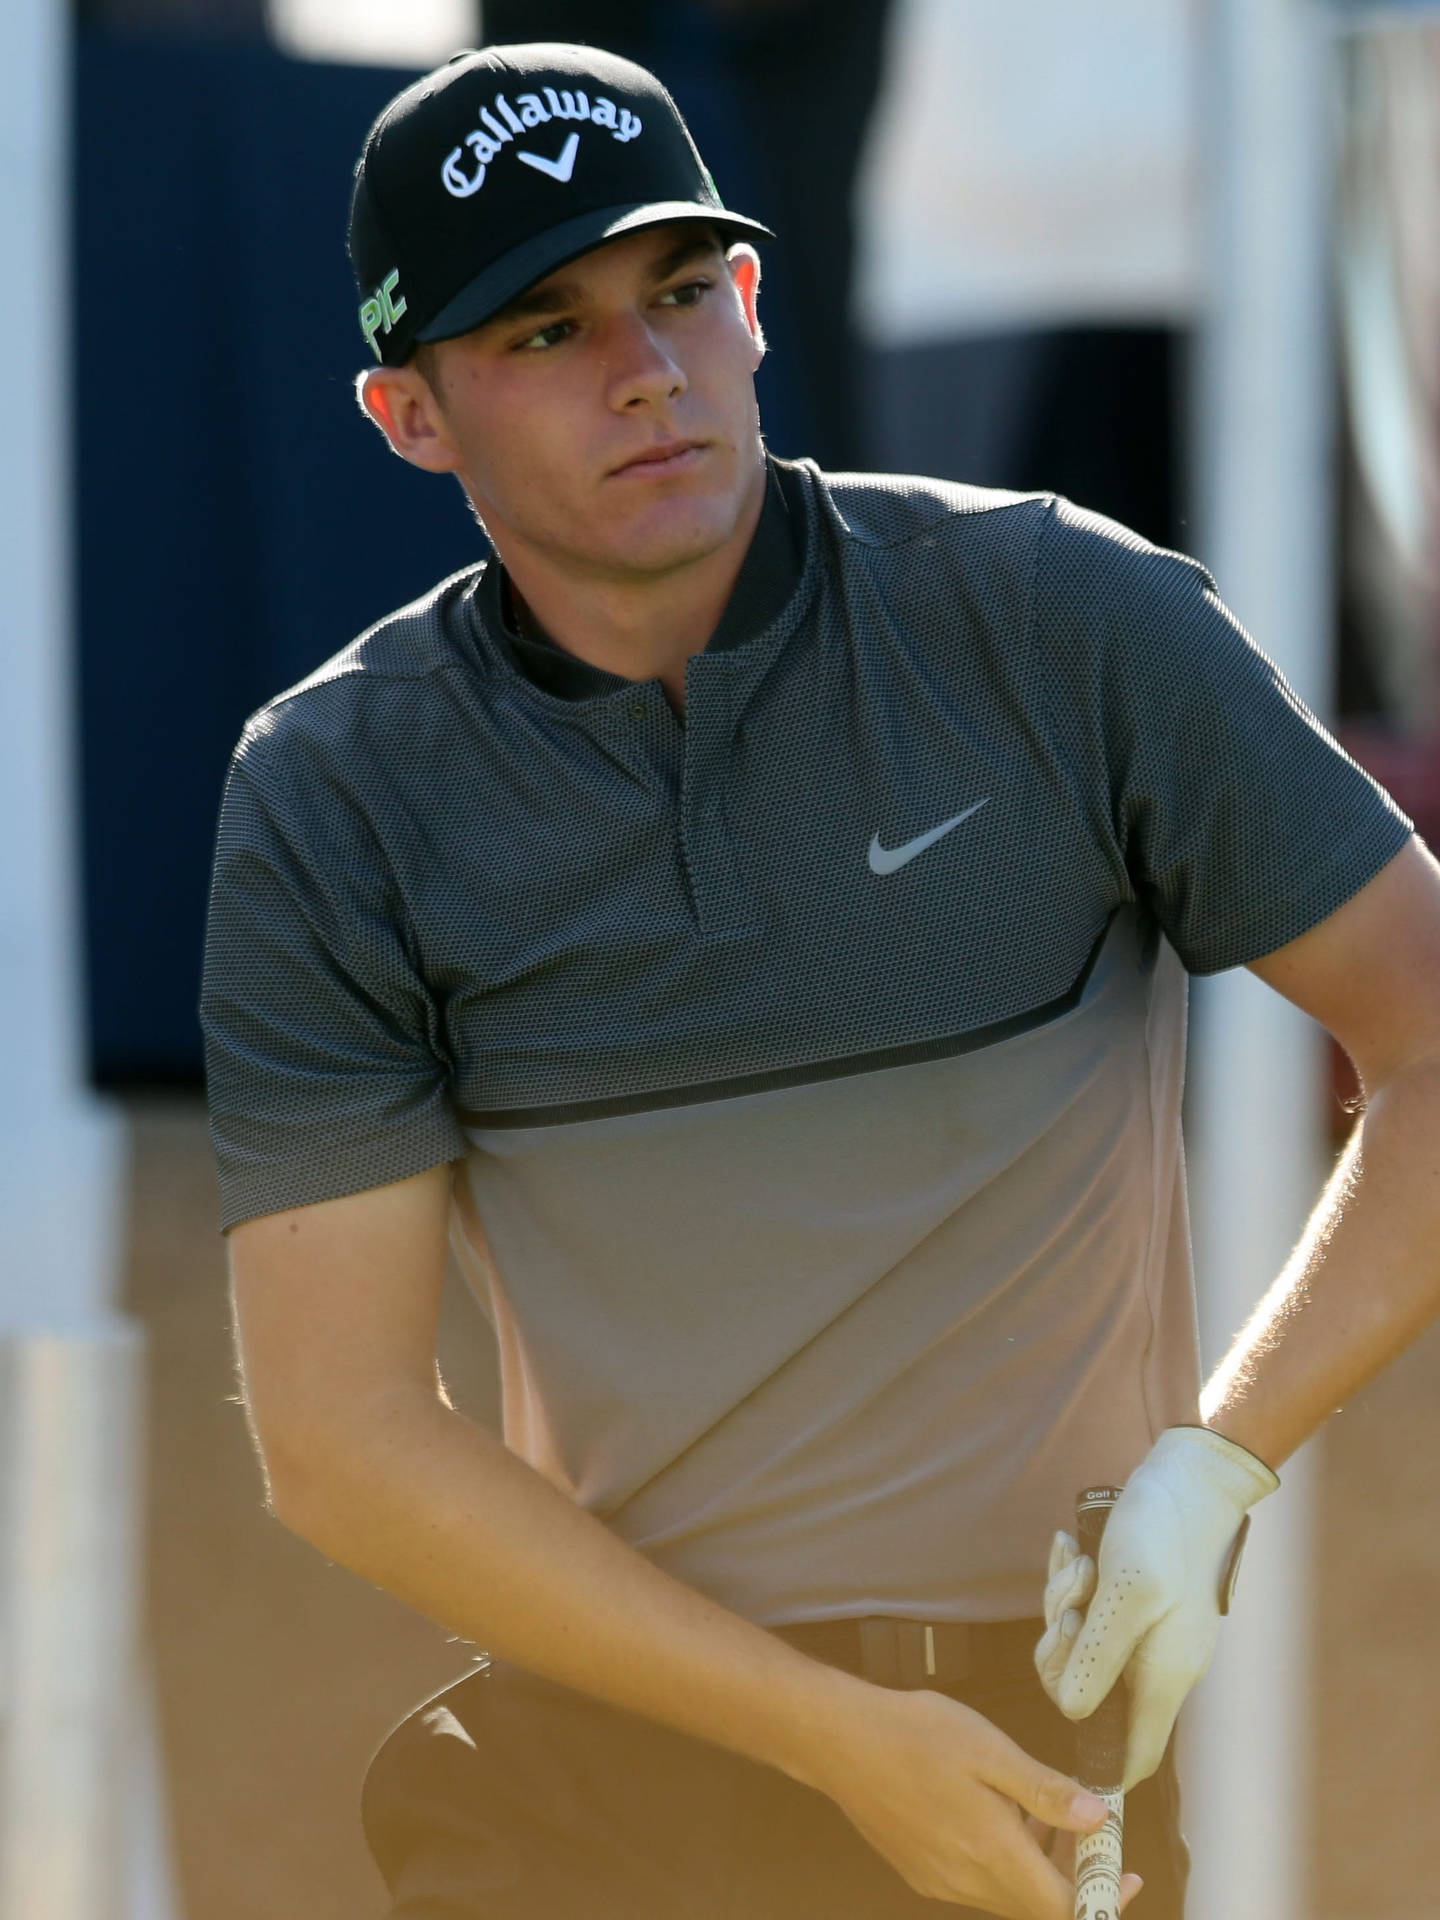 Golfistaaaron Wise Con Una Camiseta De Nike. Fondo de pantalla